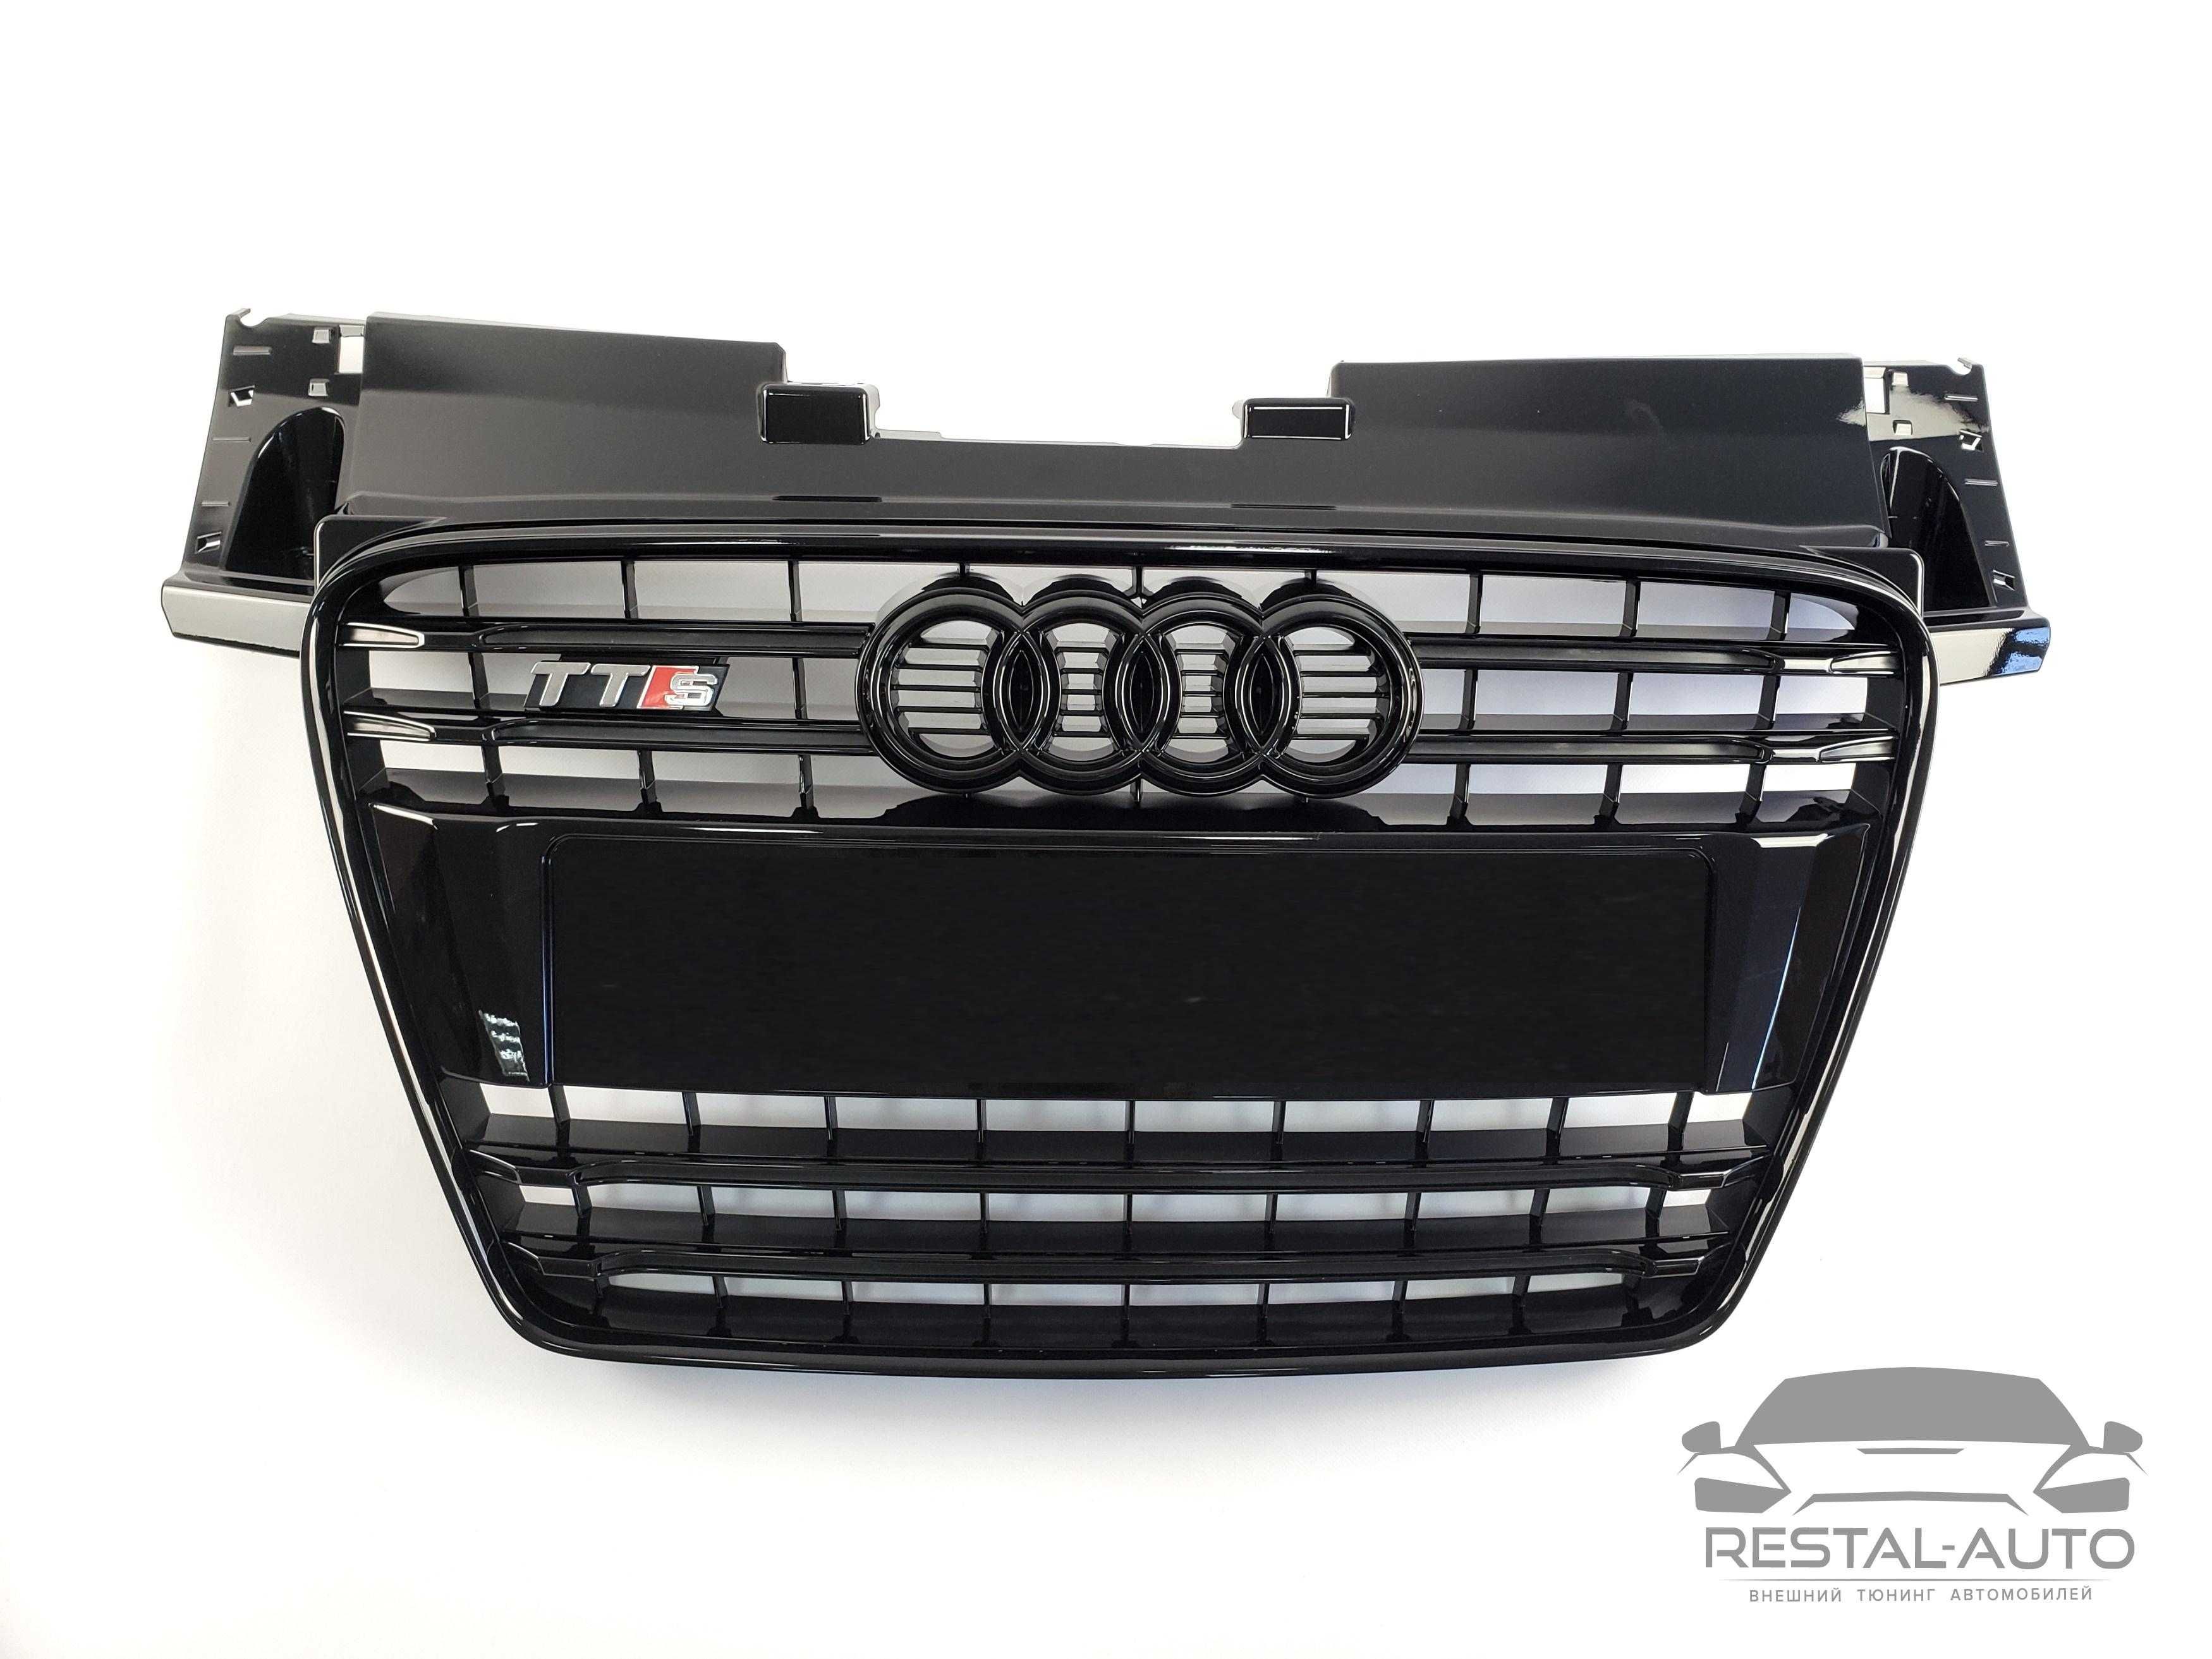 решетка радиатора Audi TT 2010-14г черная с хромом в стиле s-line tts